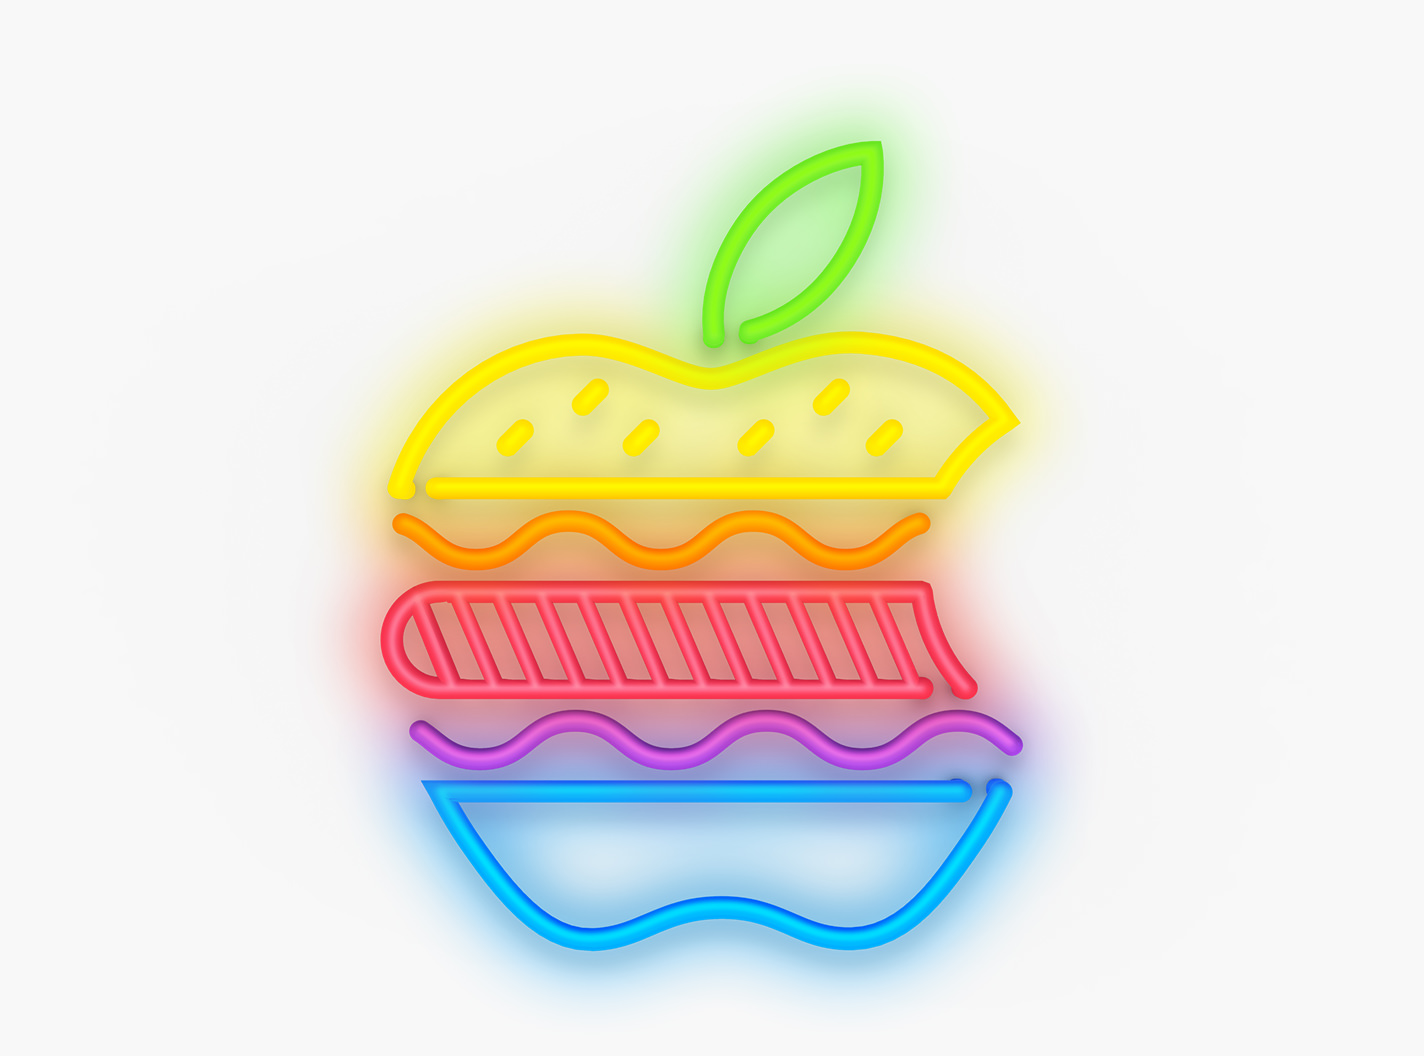 Actualizaciones: Apple lanza iOS 15.3, macOS 12.2 y más con importantes mejoras en la seguridad